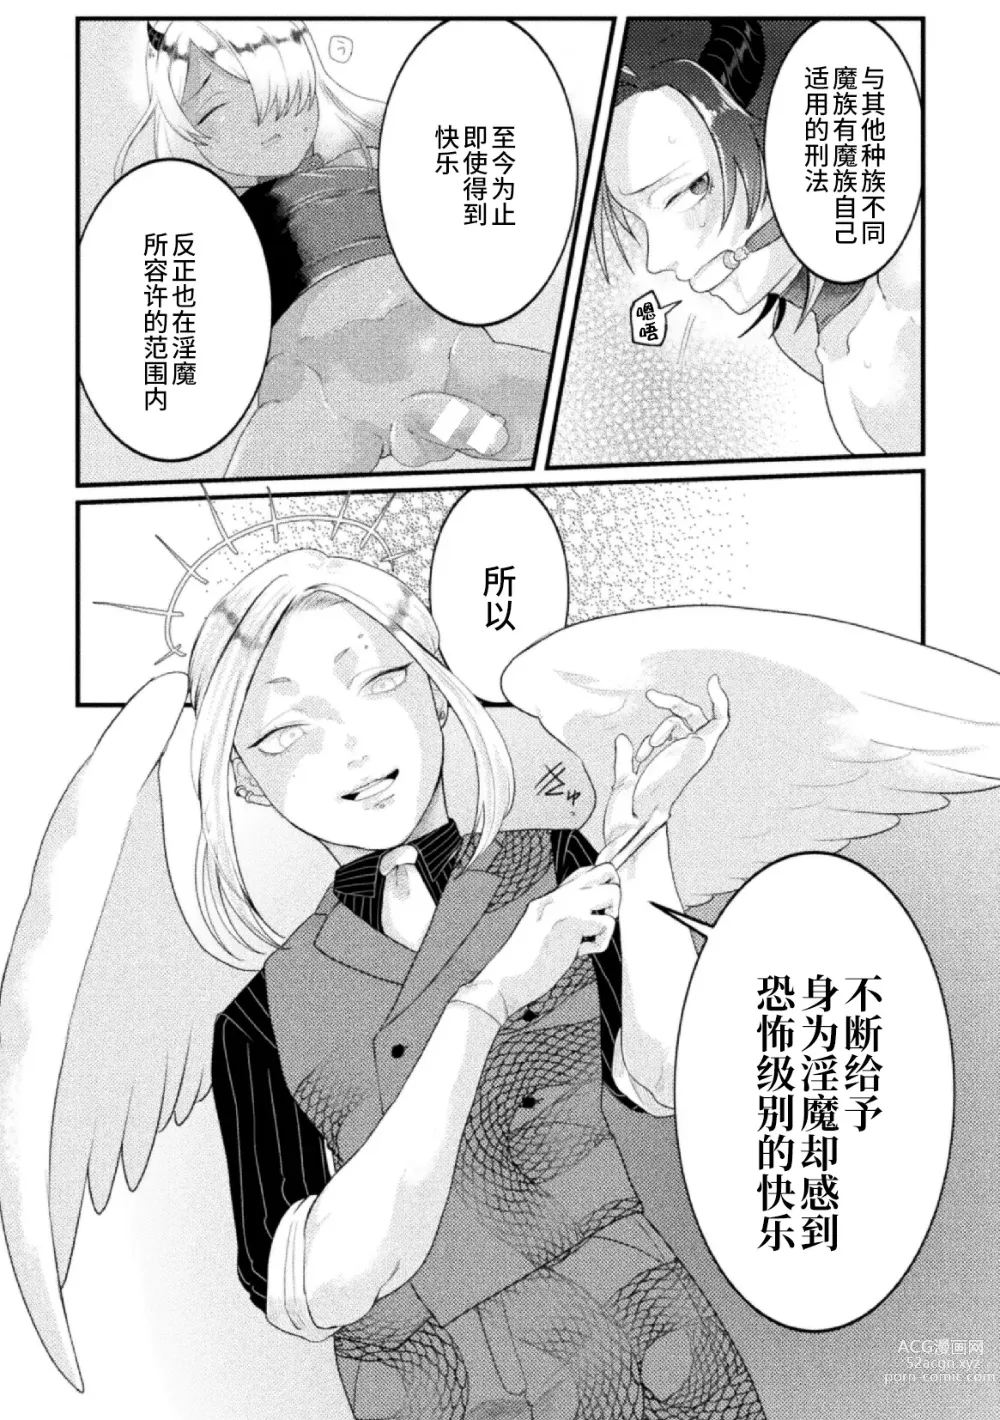 Page 4 of manga Dosukebe Namaiki Douga ~Kageki Inma Haishinsha no Matsuro~ Ch. 3